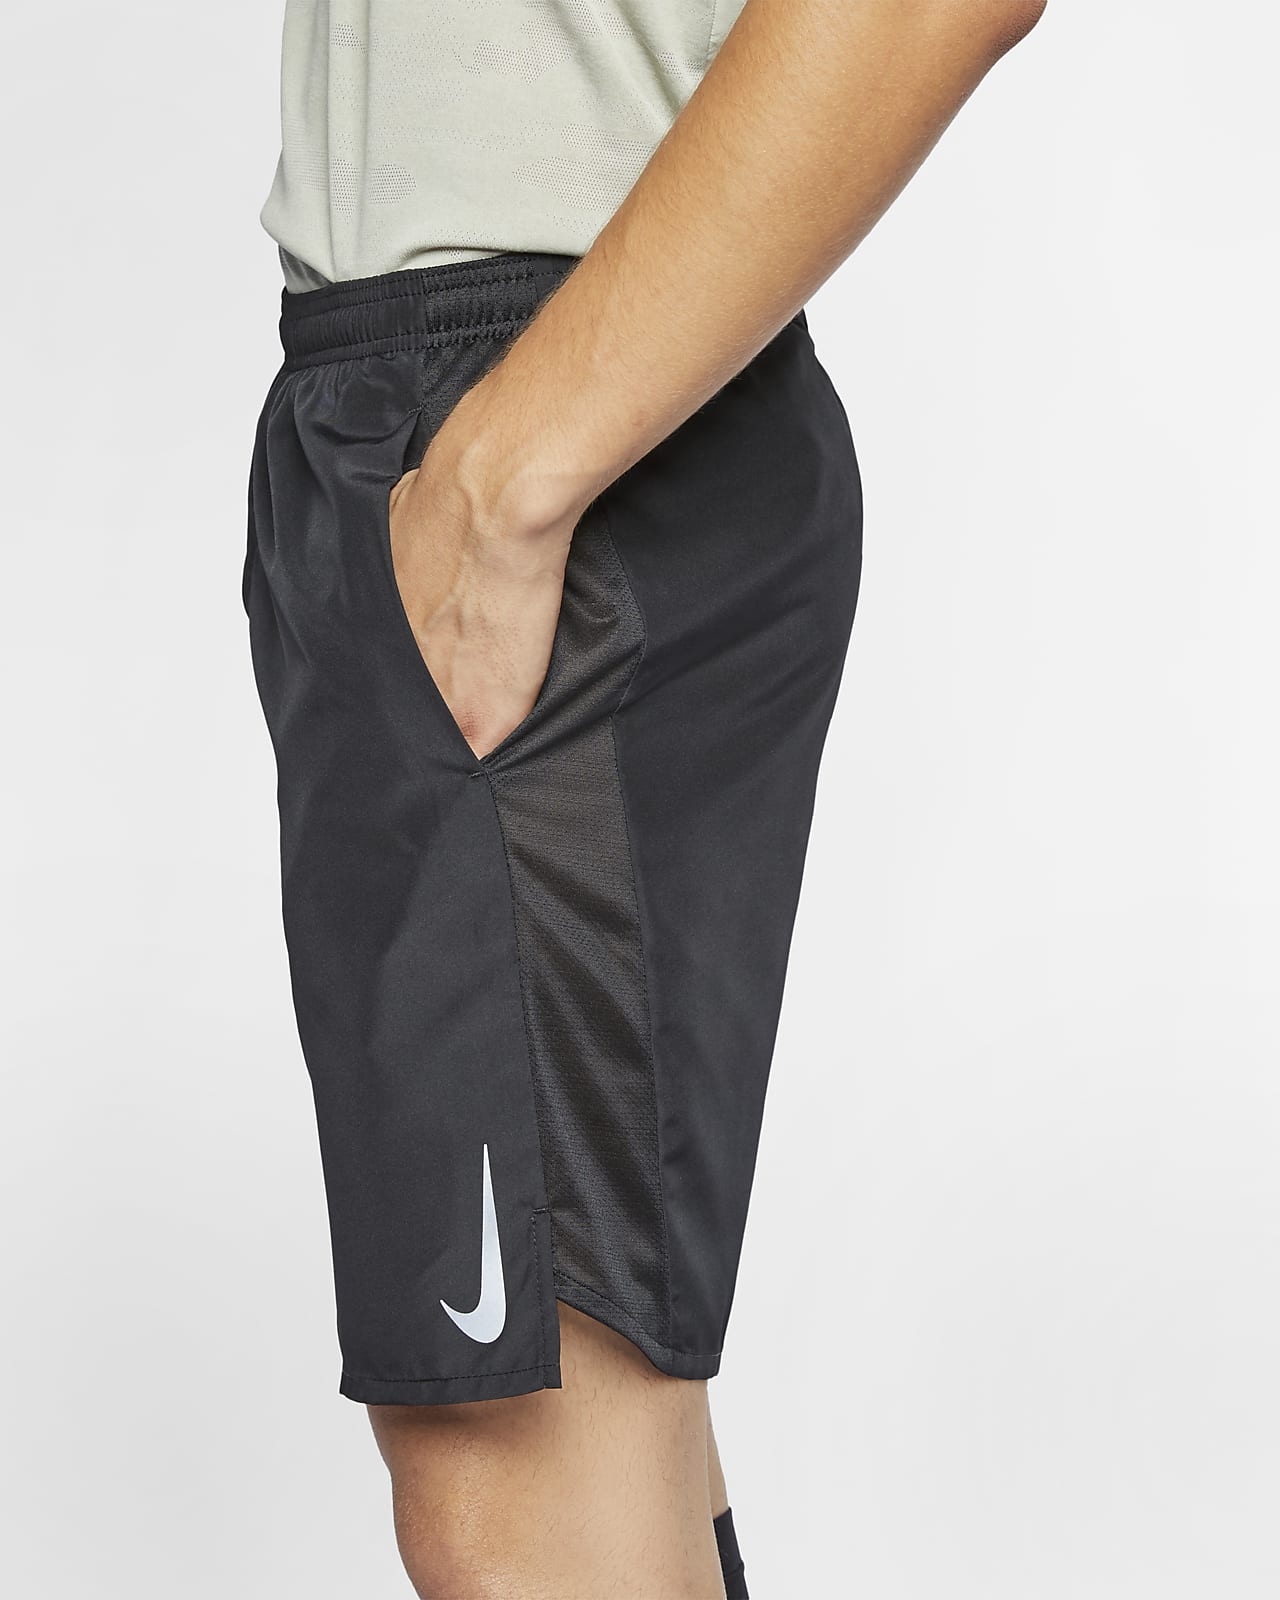 Brief-Lined Running Shorts. Nike SA